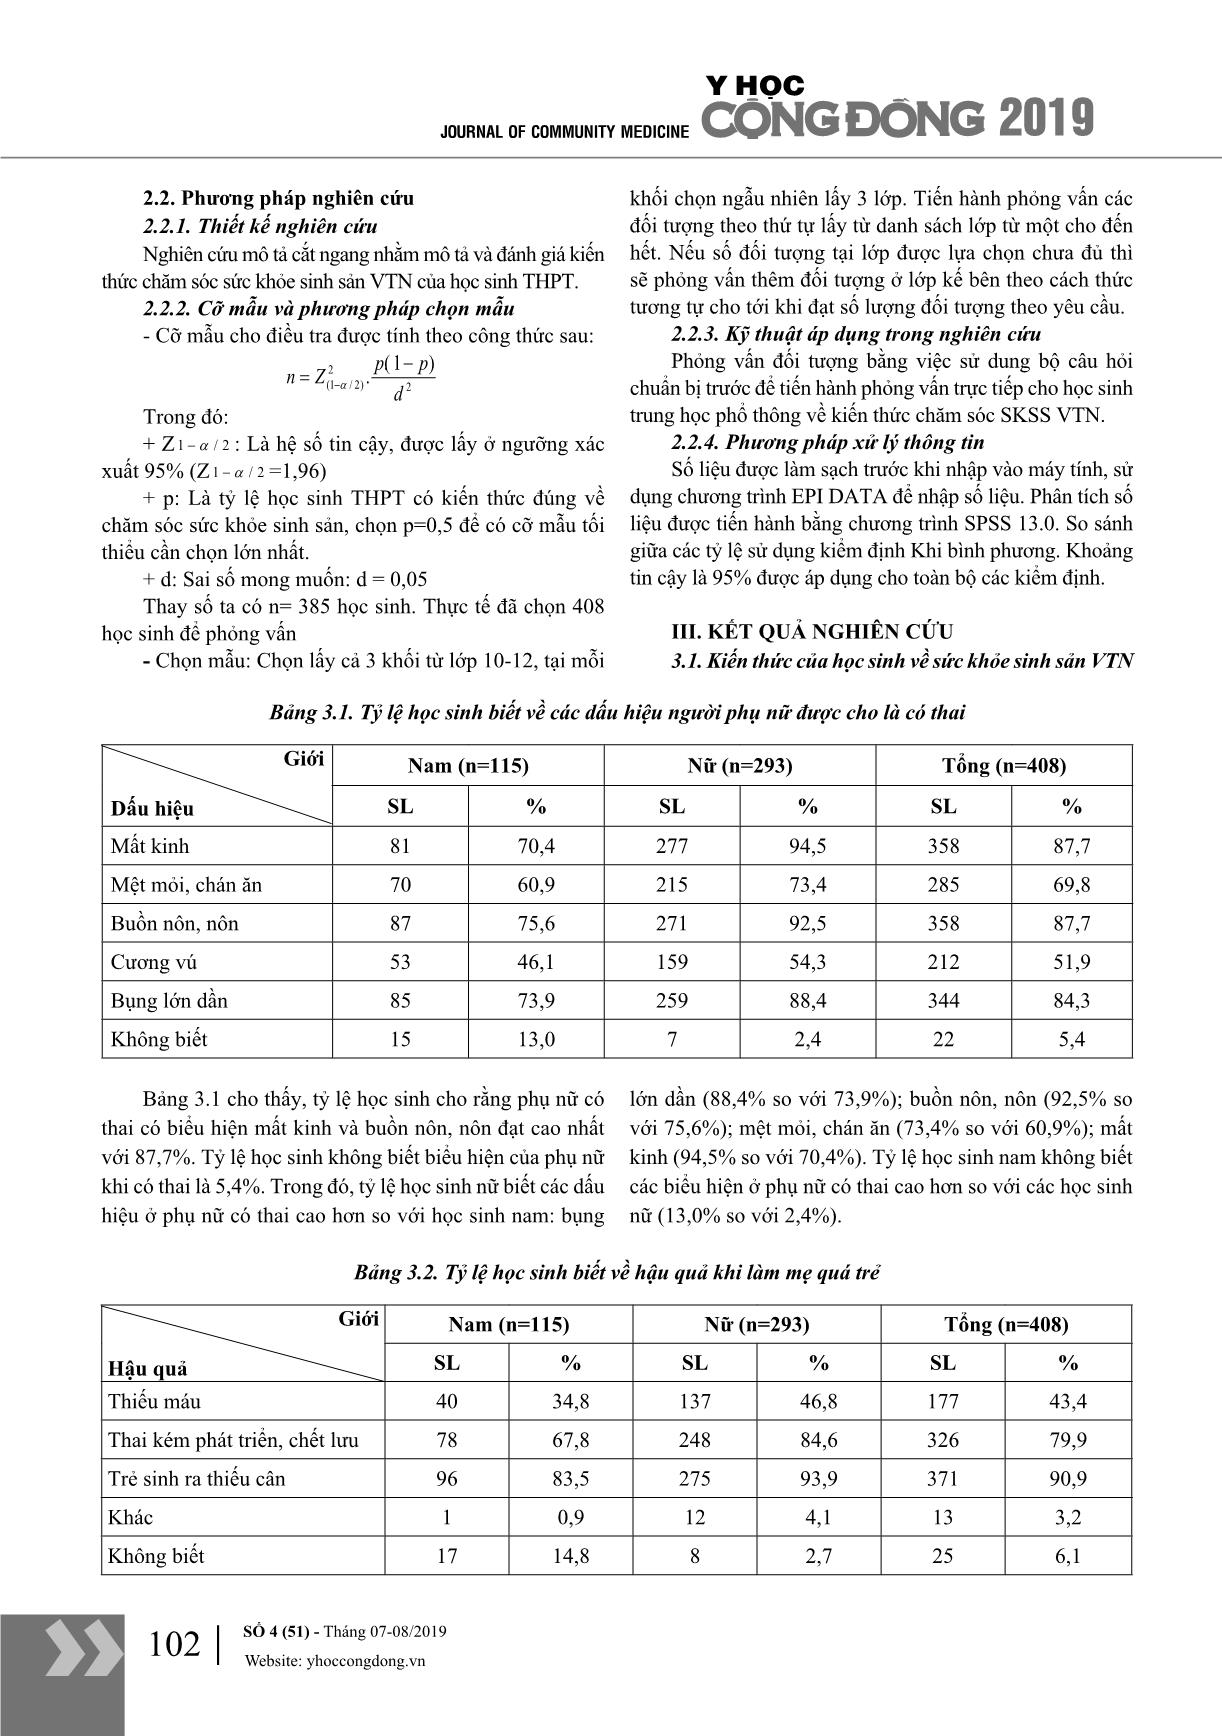 Kiến thức về chăm sóc sức khỏe sinh sản của học sinh trường trung học phổ thông Đông Thụy Anh, huyện Thái Thụy, tỉnh Thái Bình năm 2018 trang 2